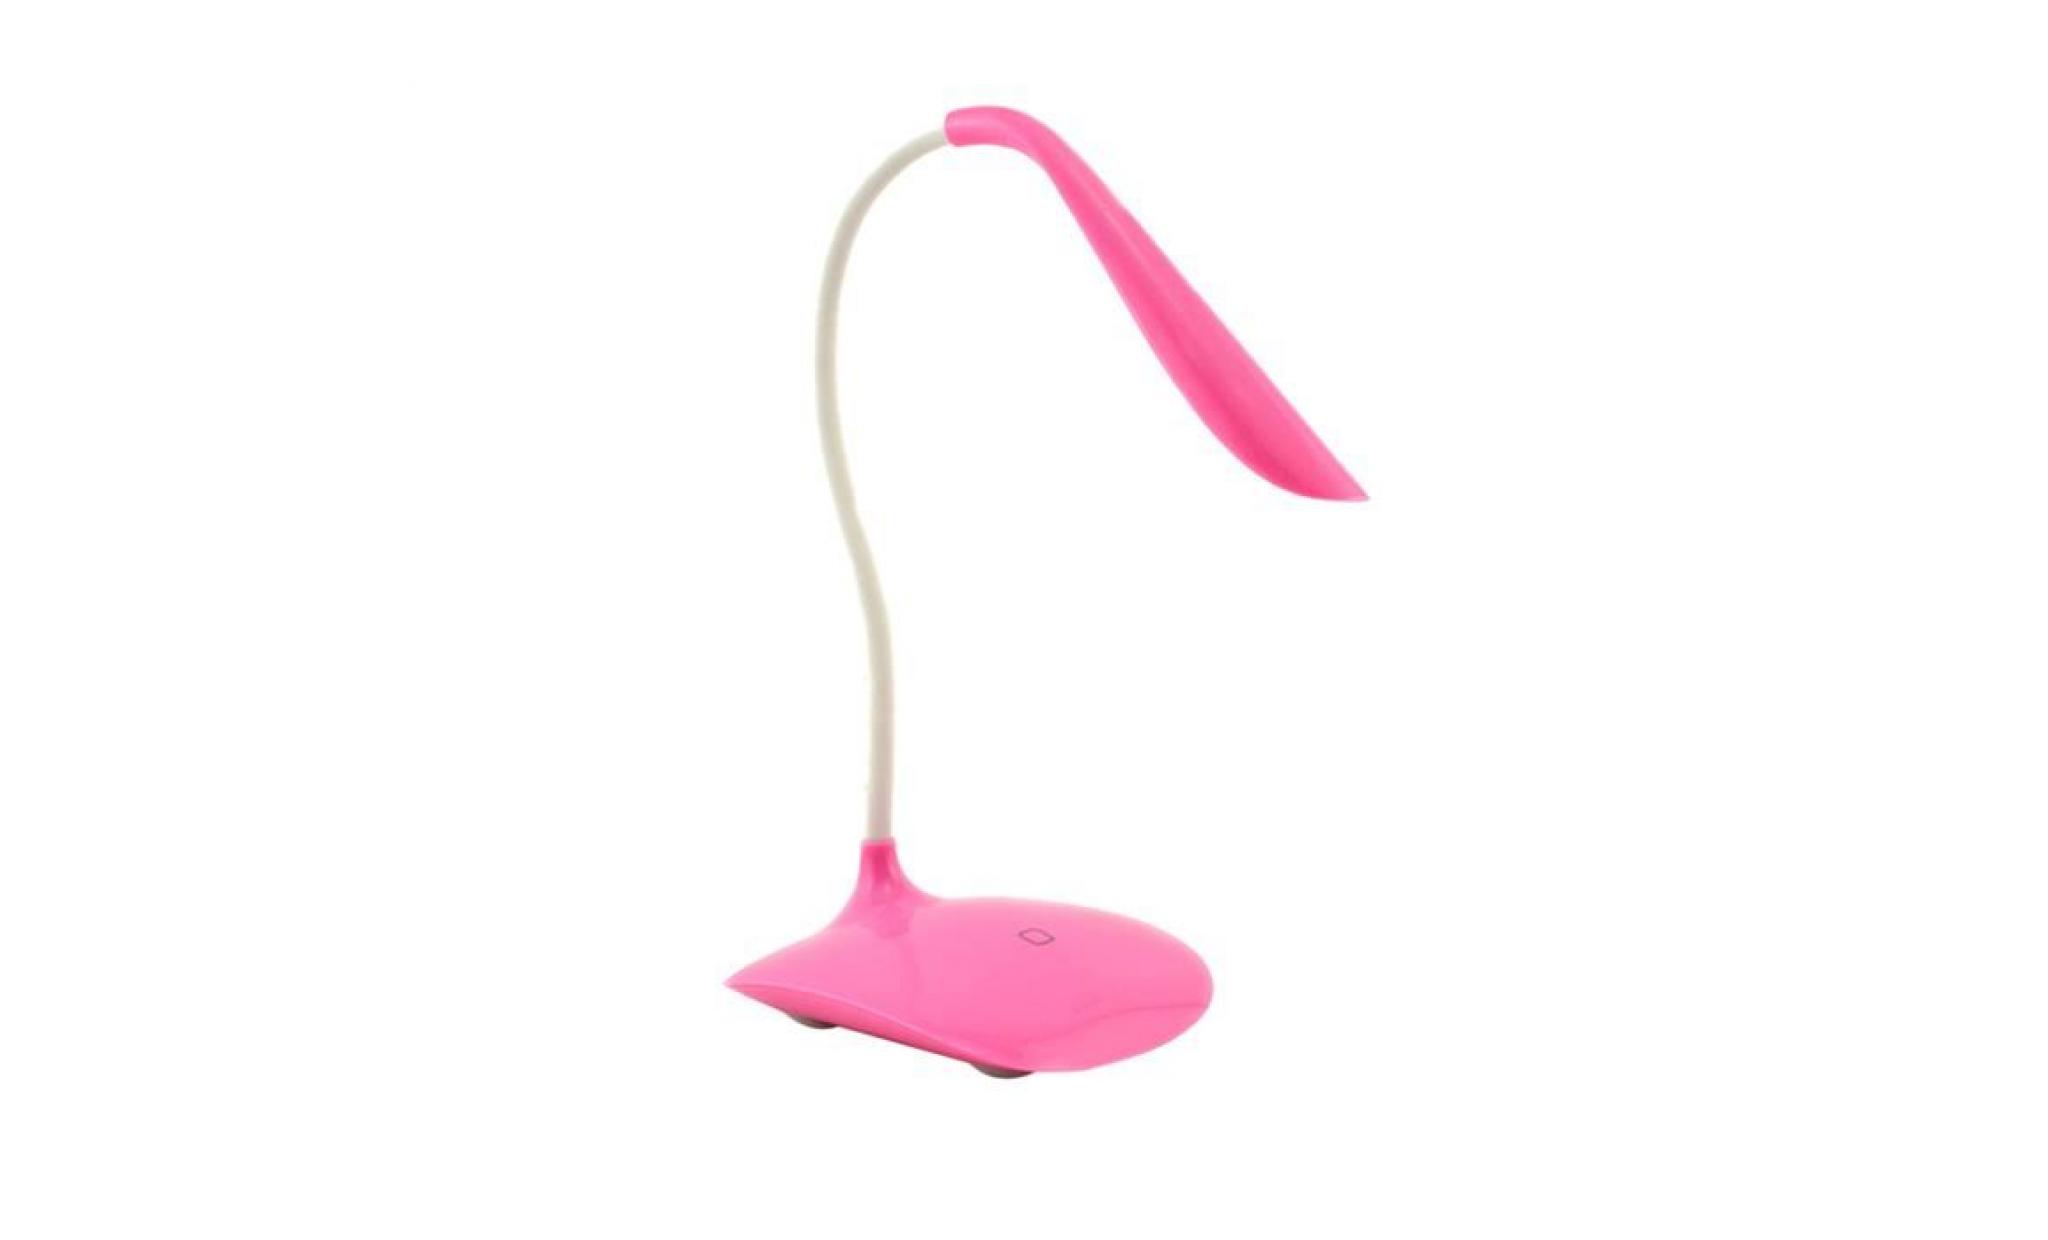 rose ajustable usb rechargeable nouveau capteur tactile led table lampe de lecture lampe de lecture@am1x193 pink_999 pas cher